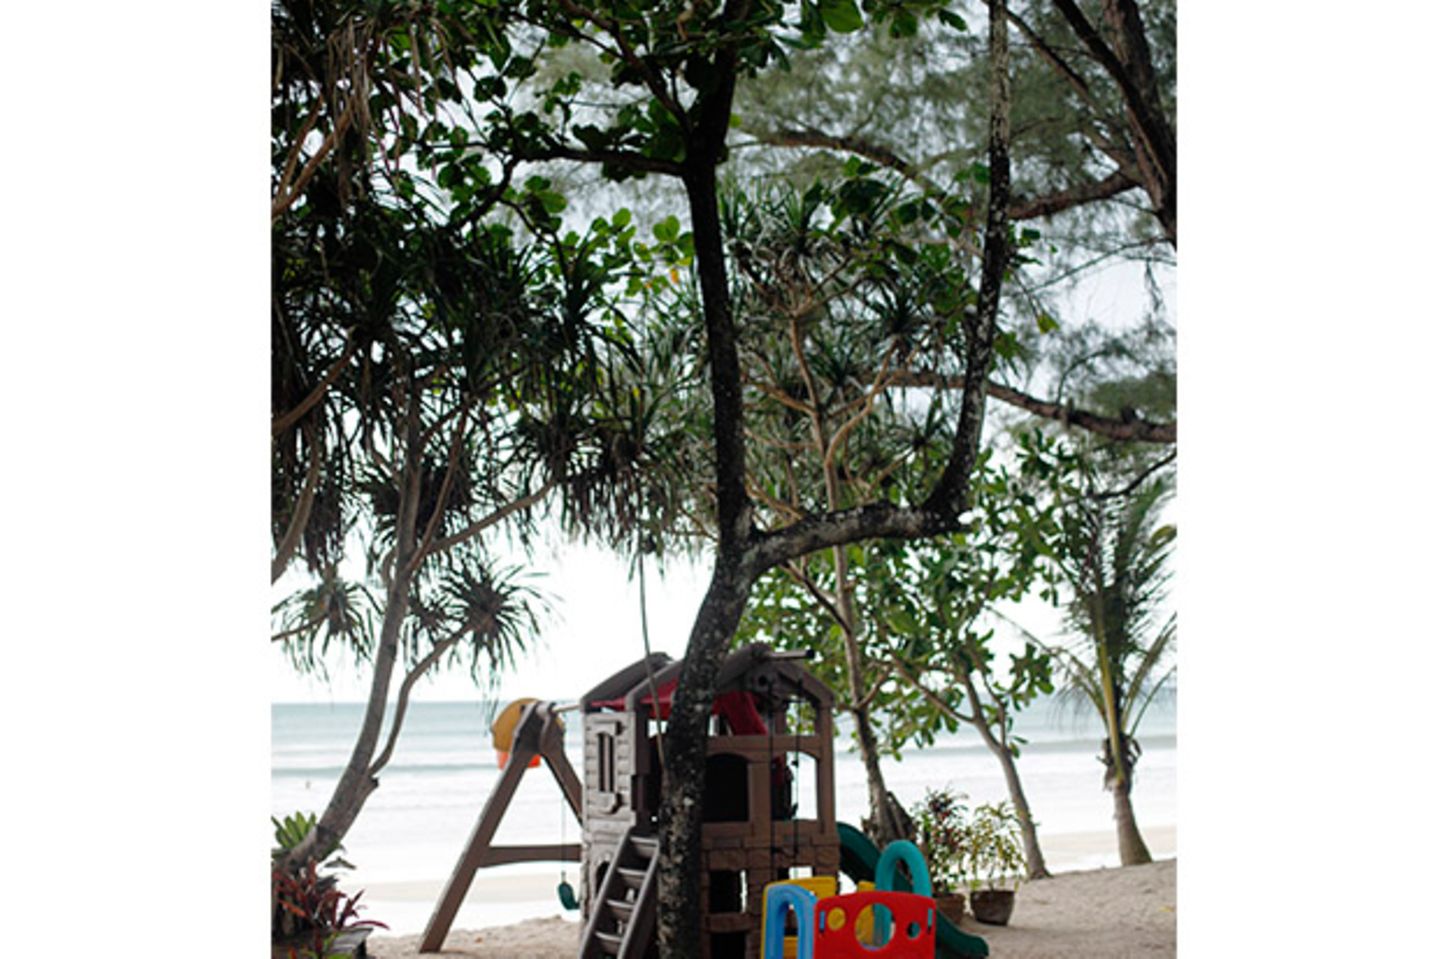 Spielplatz am Strand in Thailand